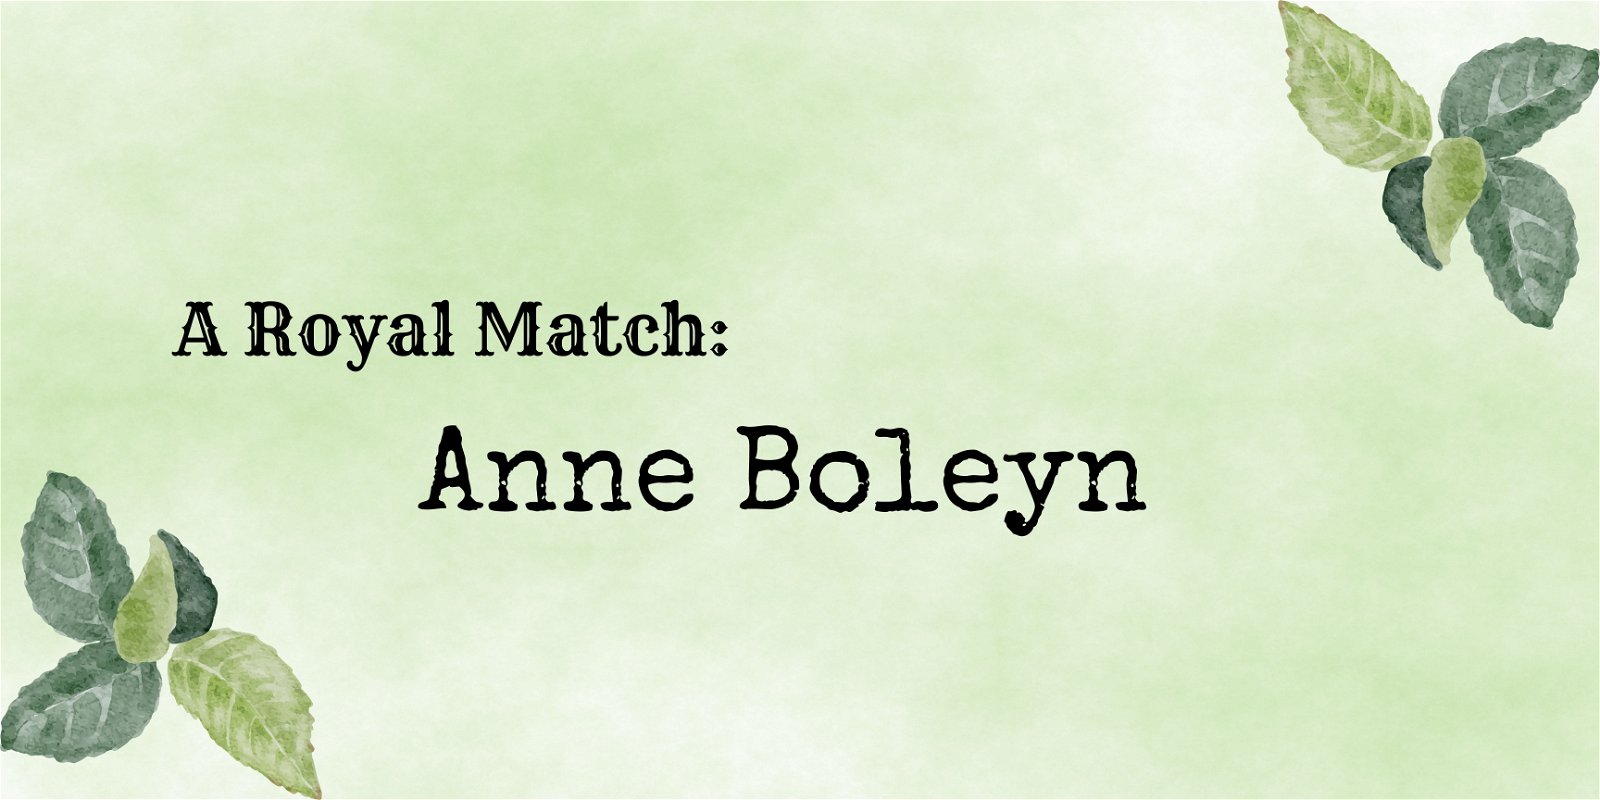 A Royal Match: Anne Boleyn